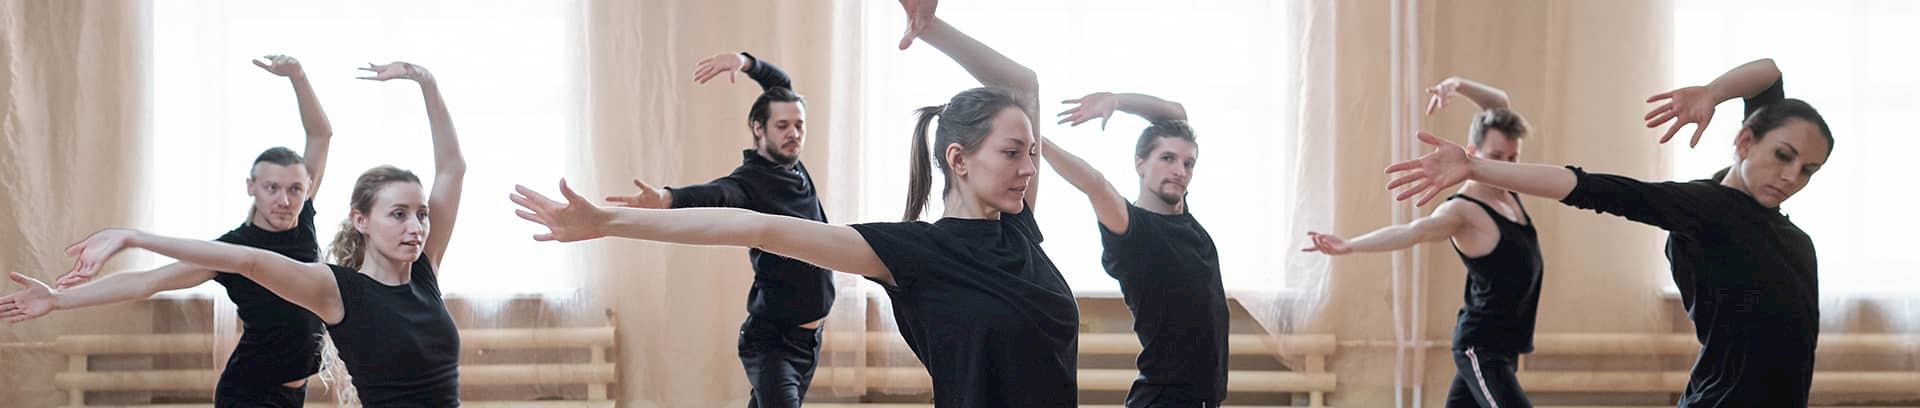 Kursus | Moderne dans og bevægelsesfrihed